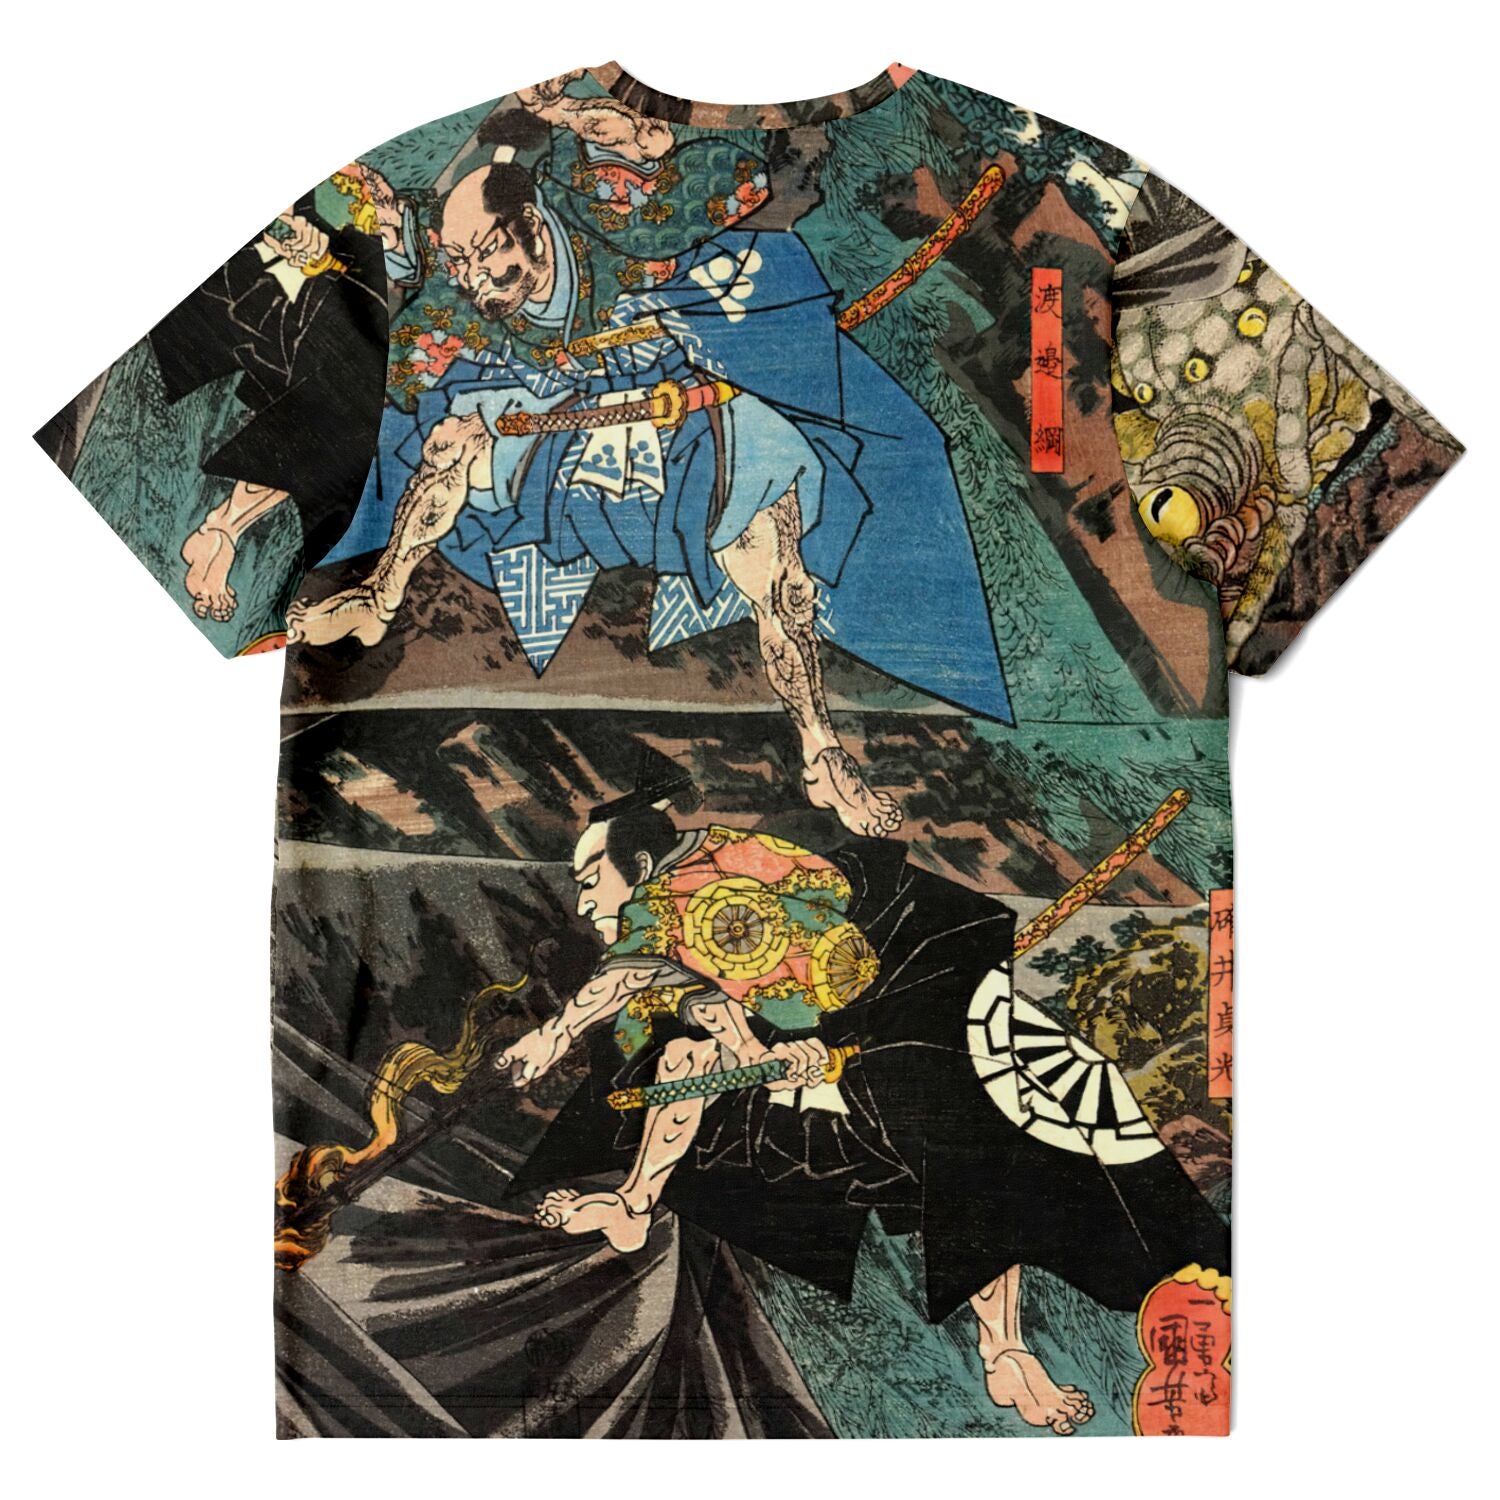 T-shirt Shape-Shifting Demon, Tsuchigumo the Earth Spider fights Raiko | Kuniyoshi Graphic Art T-Shirt